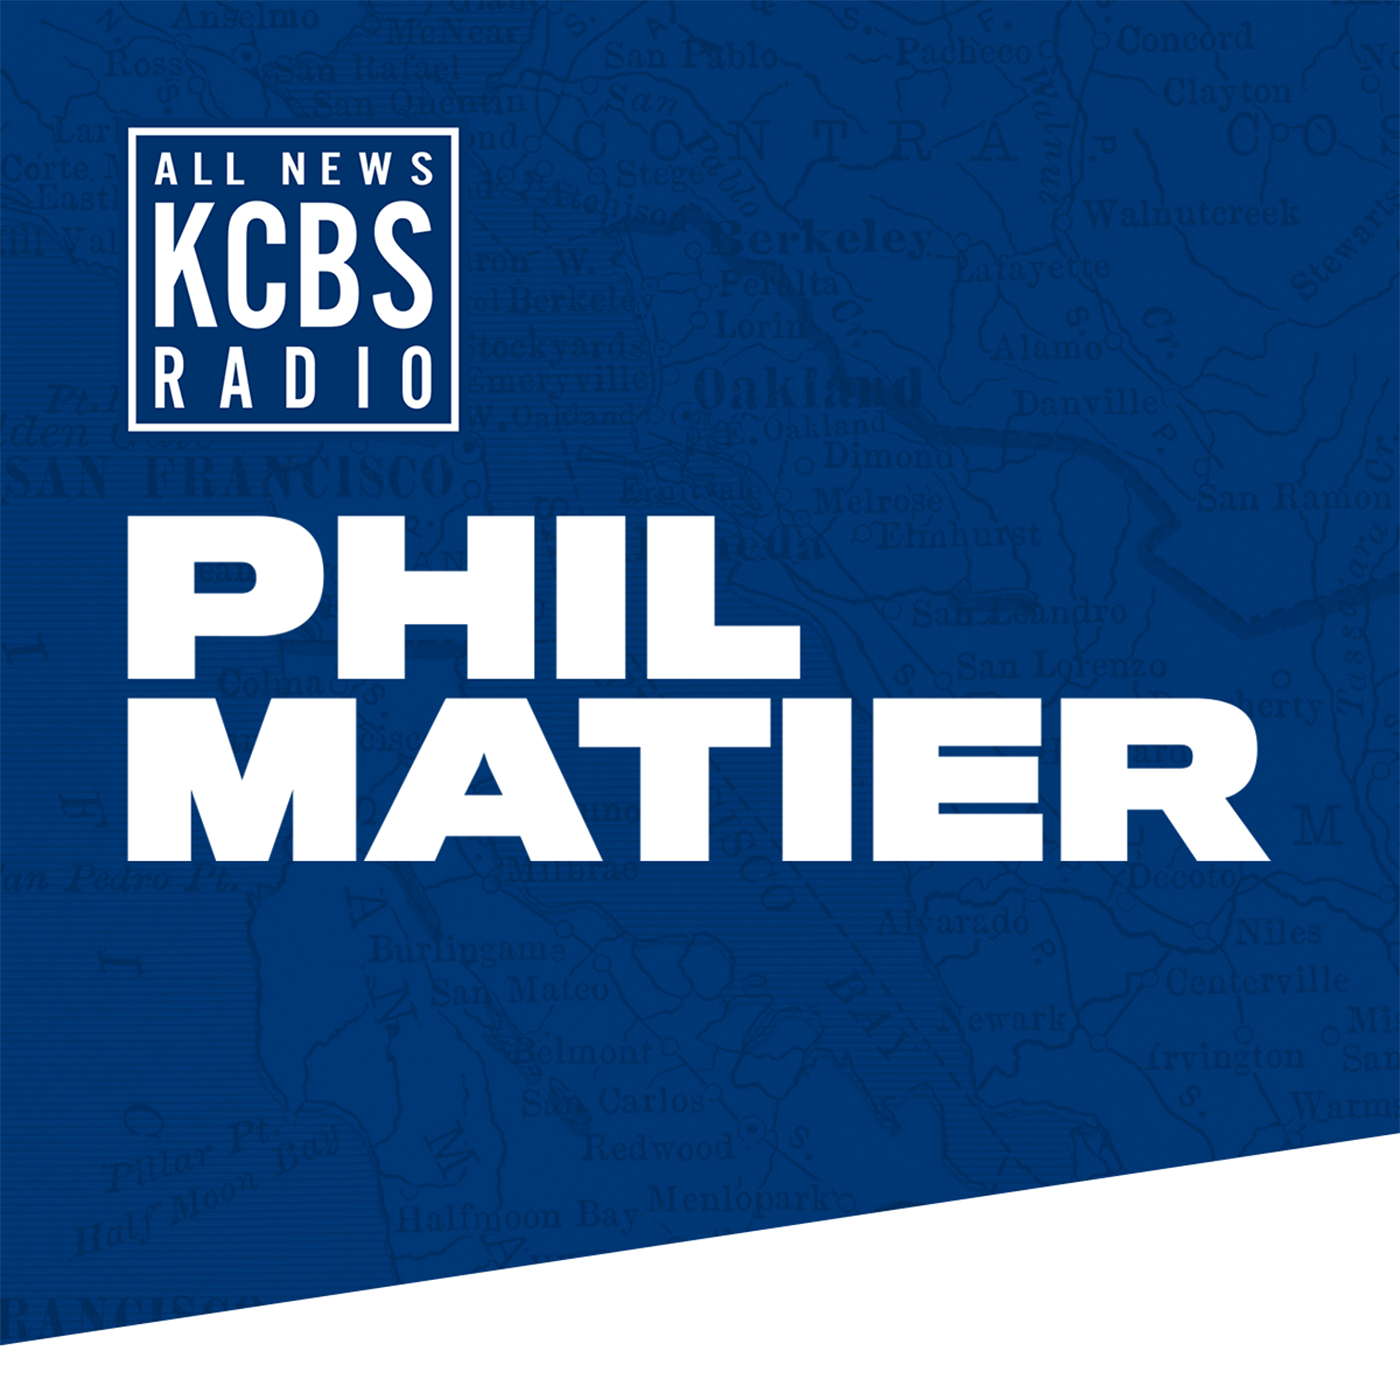 Phil Matier: Unusual CA Legislative Session After Republican Senator Tests Positive